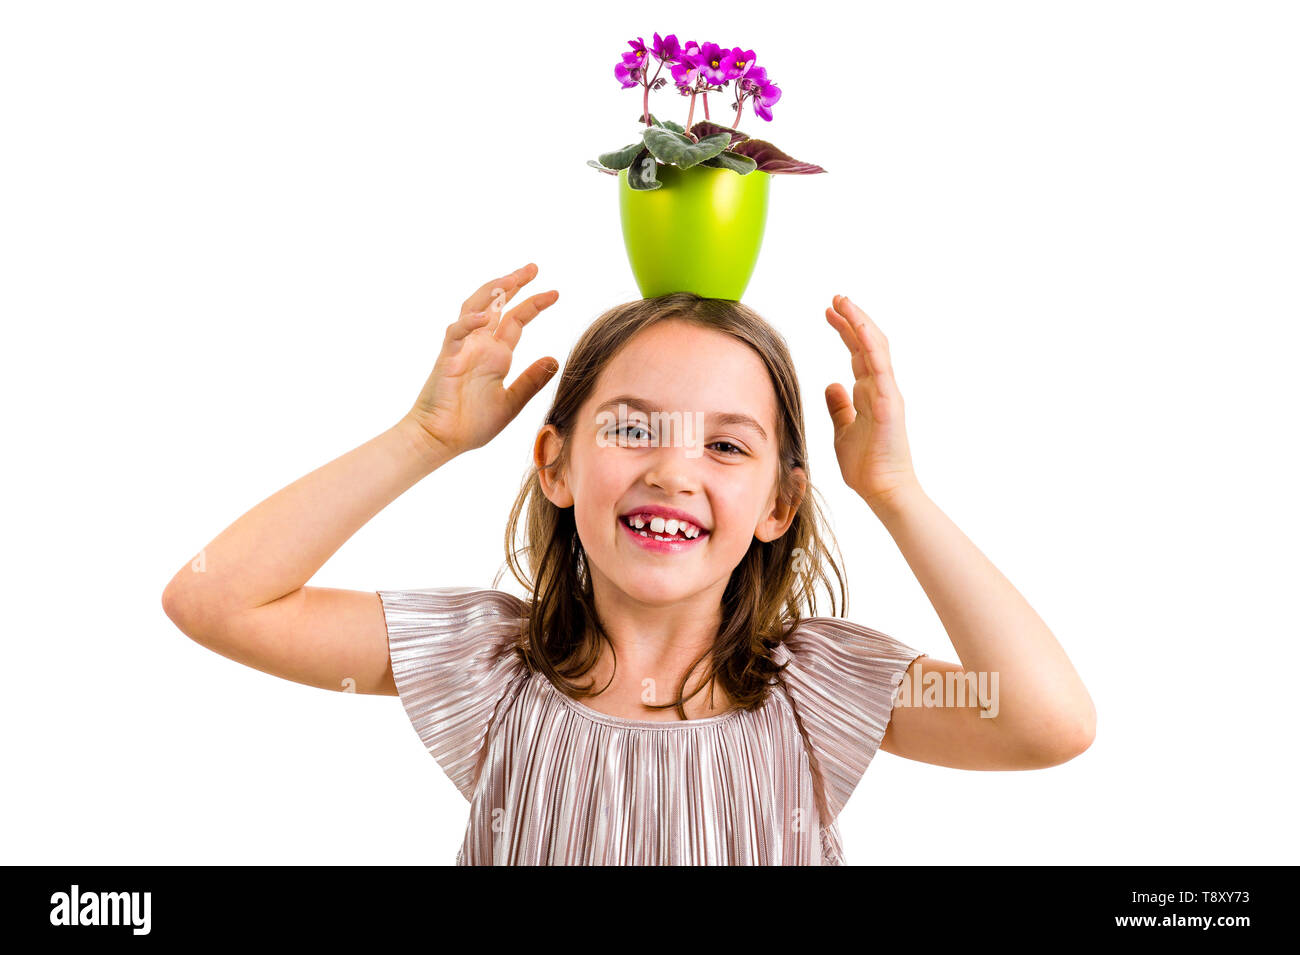 Mädchen mit Blumentopf auf den Kopf, Spaß haben ein Lächeln auf den Lippen. Kleines Mädchen im Kleid holding Green Flower Pot mit Viola Blumen auf dem Kopf Spaß, vermasseln Stockfoto